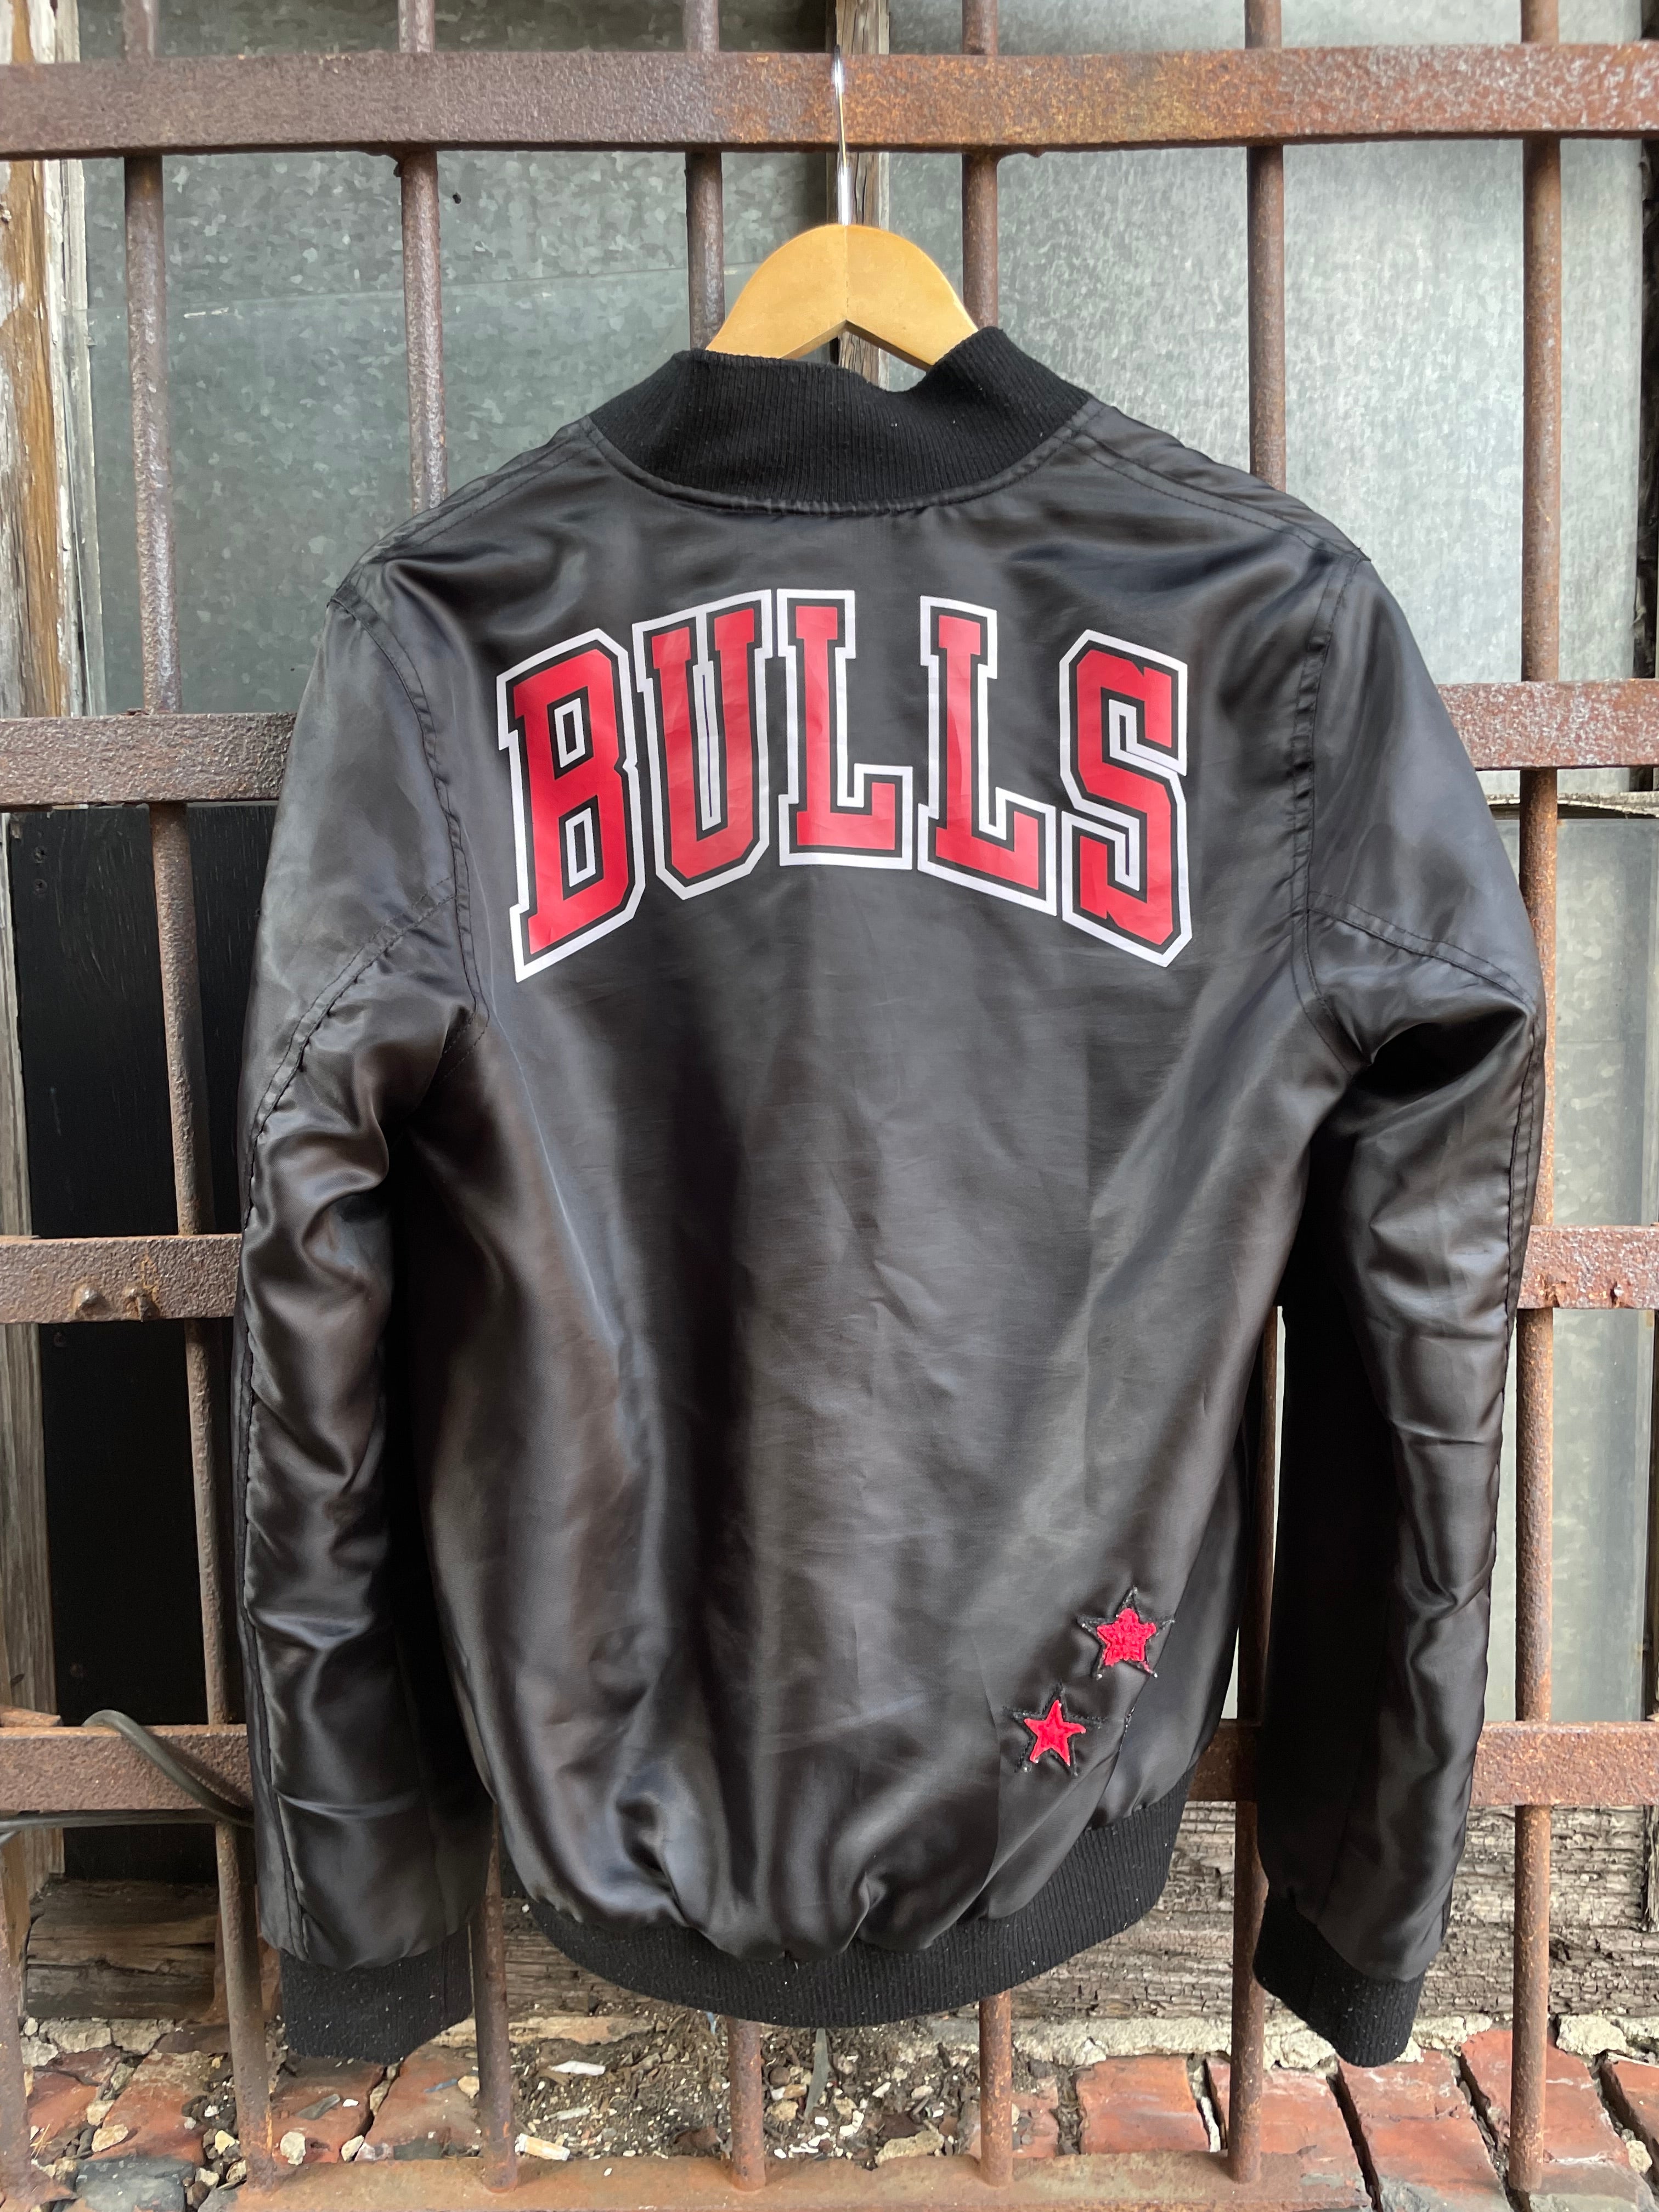 Starter Chicago Bulls Black Satin Bomber Jacket